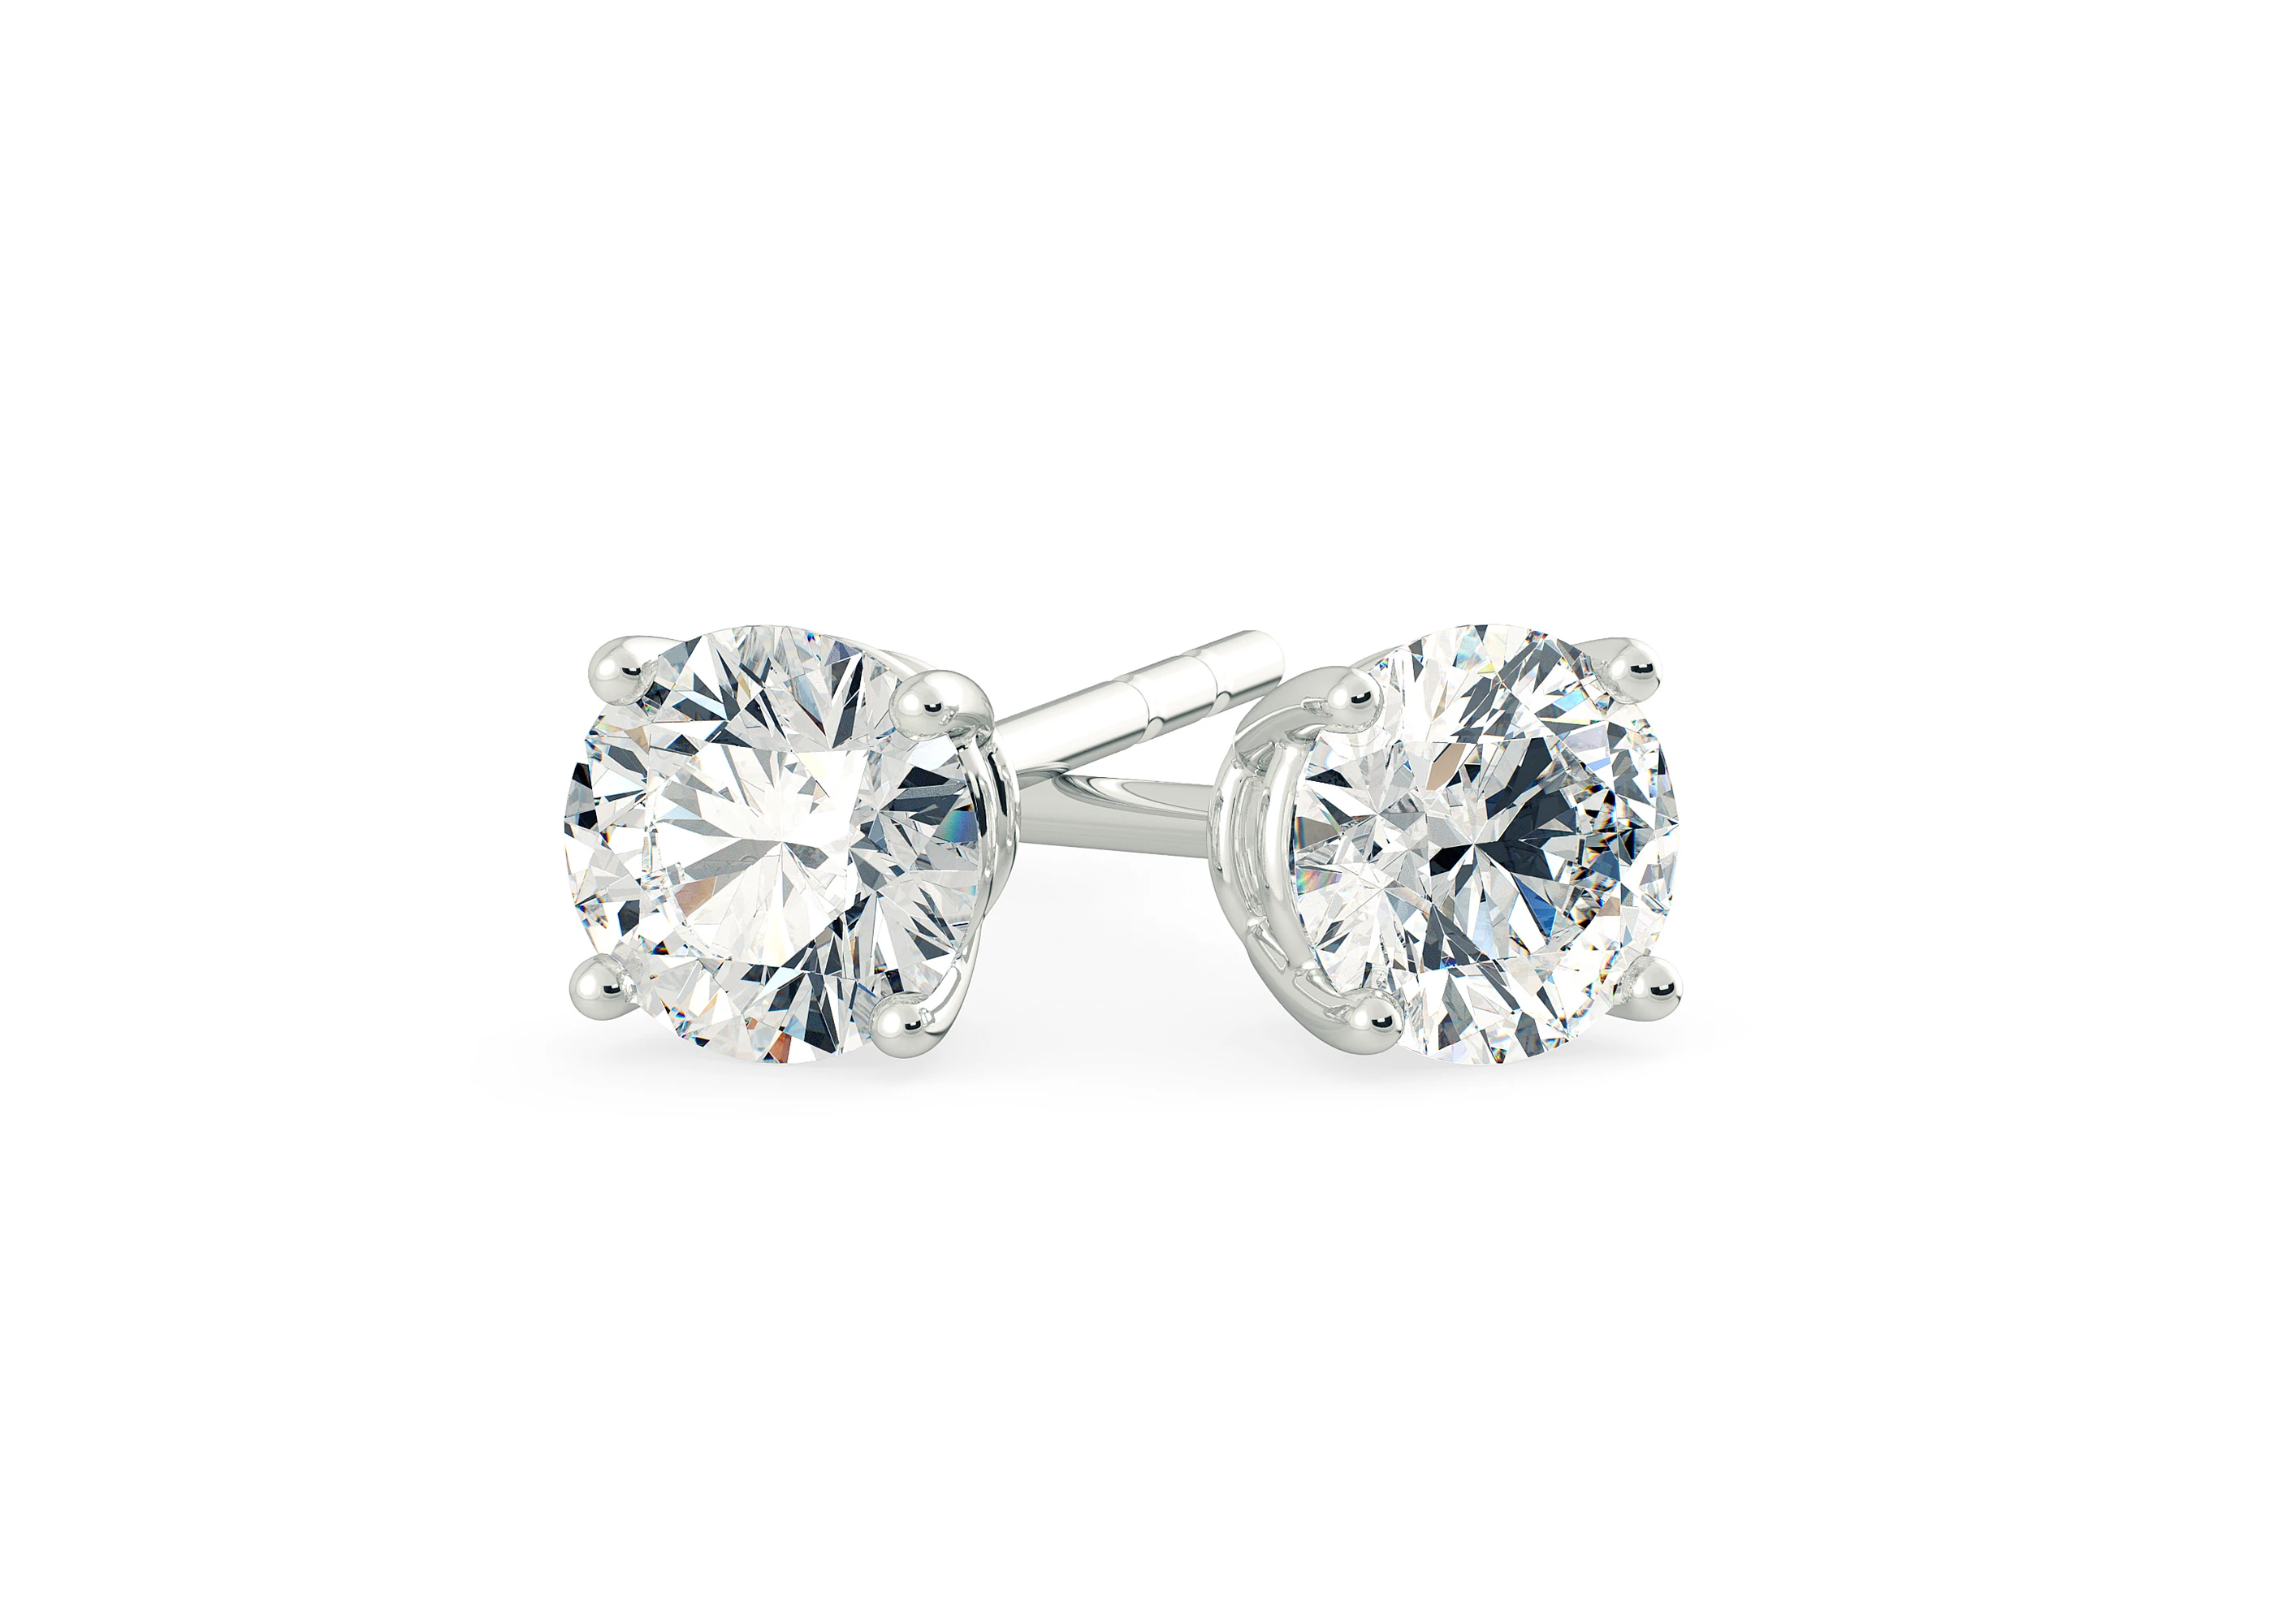 One Carat Round Brilliant Diamond Stud Earrings in Platinum 950